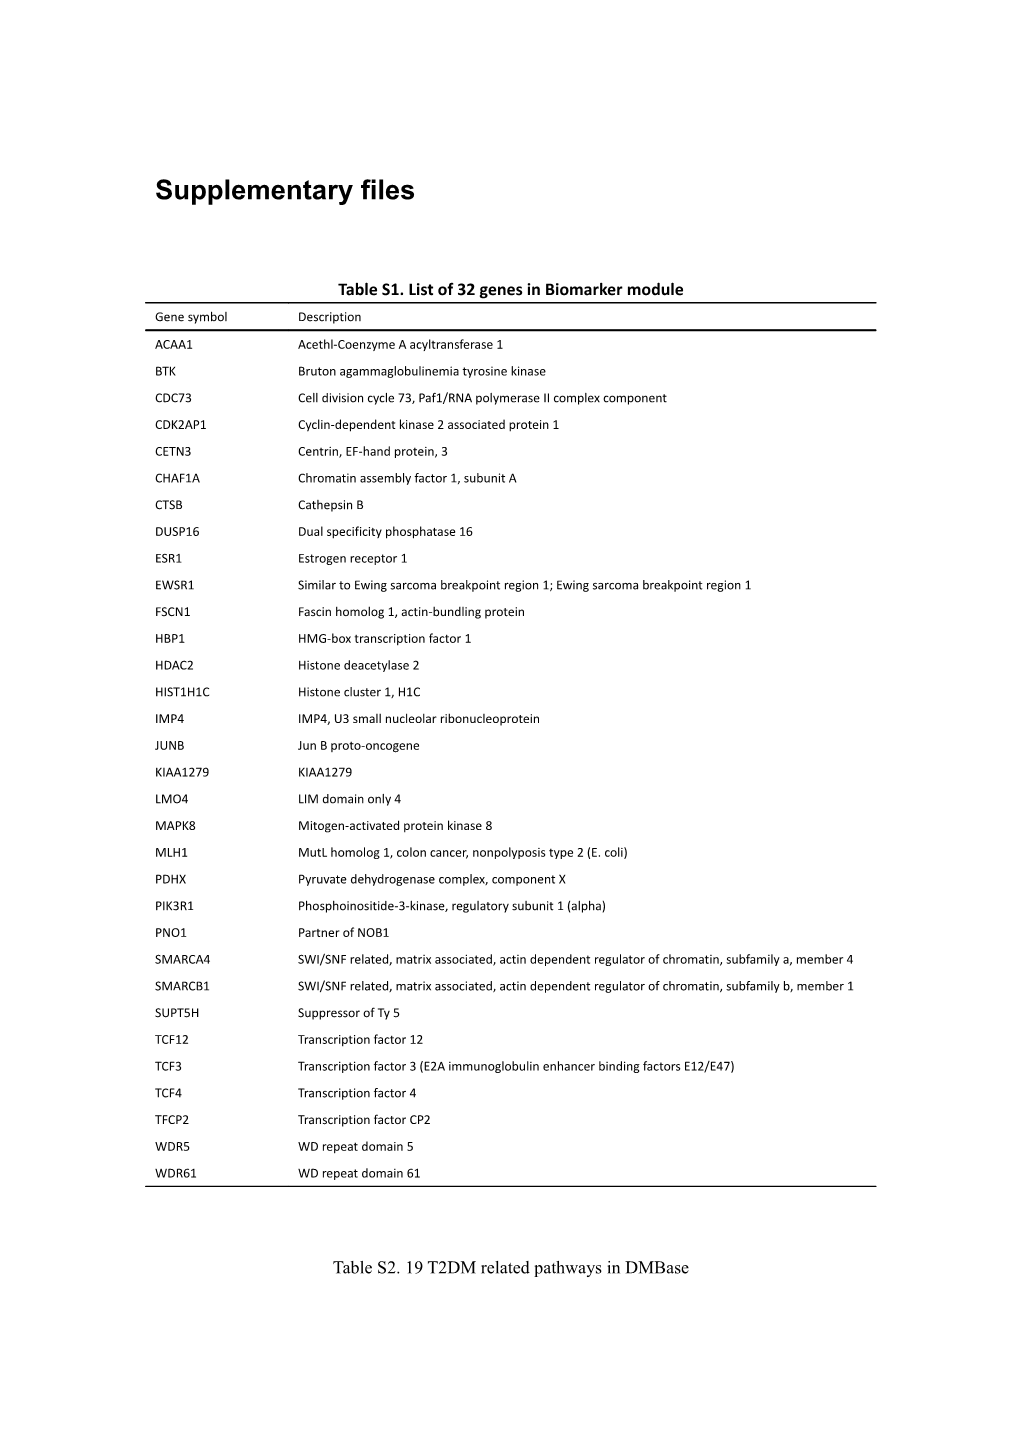 Table S1.List of 32 Genes in Biomarker Module